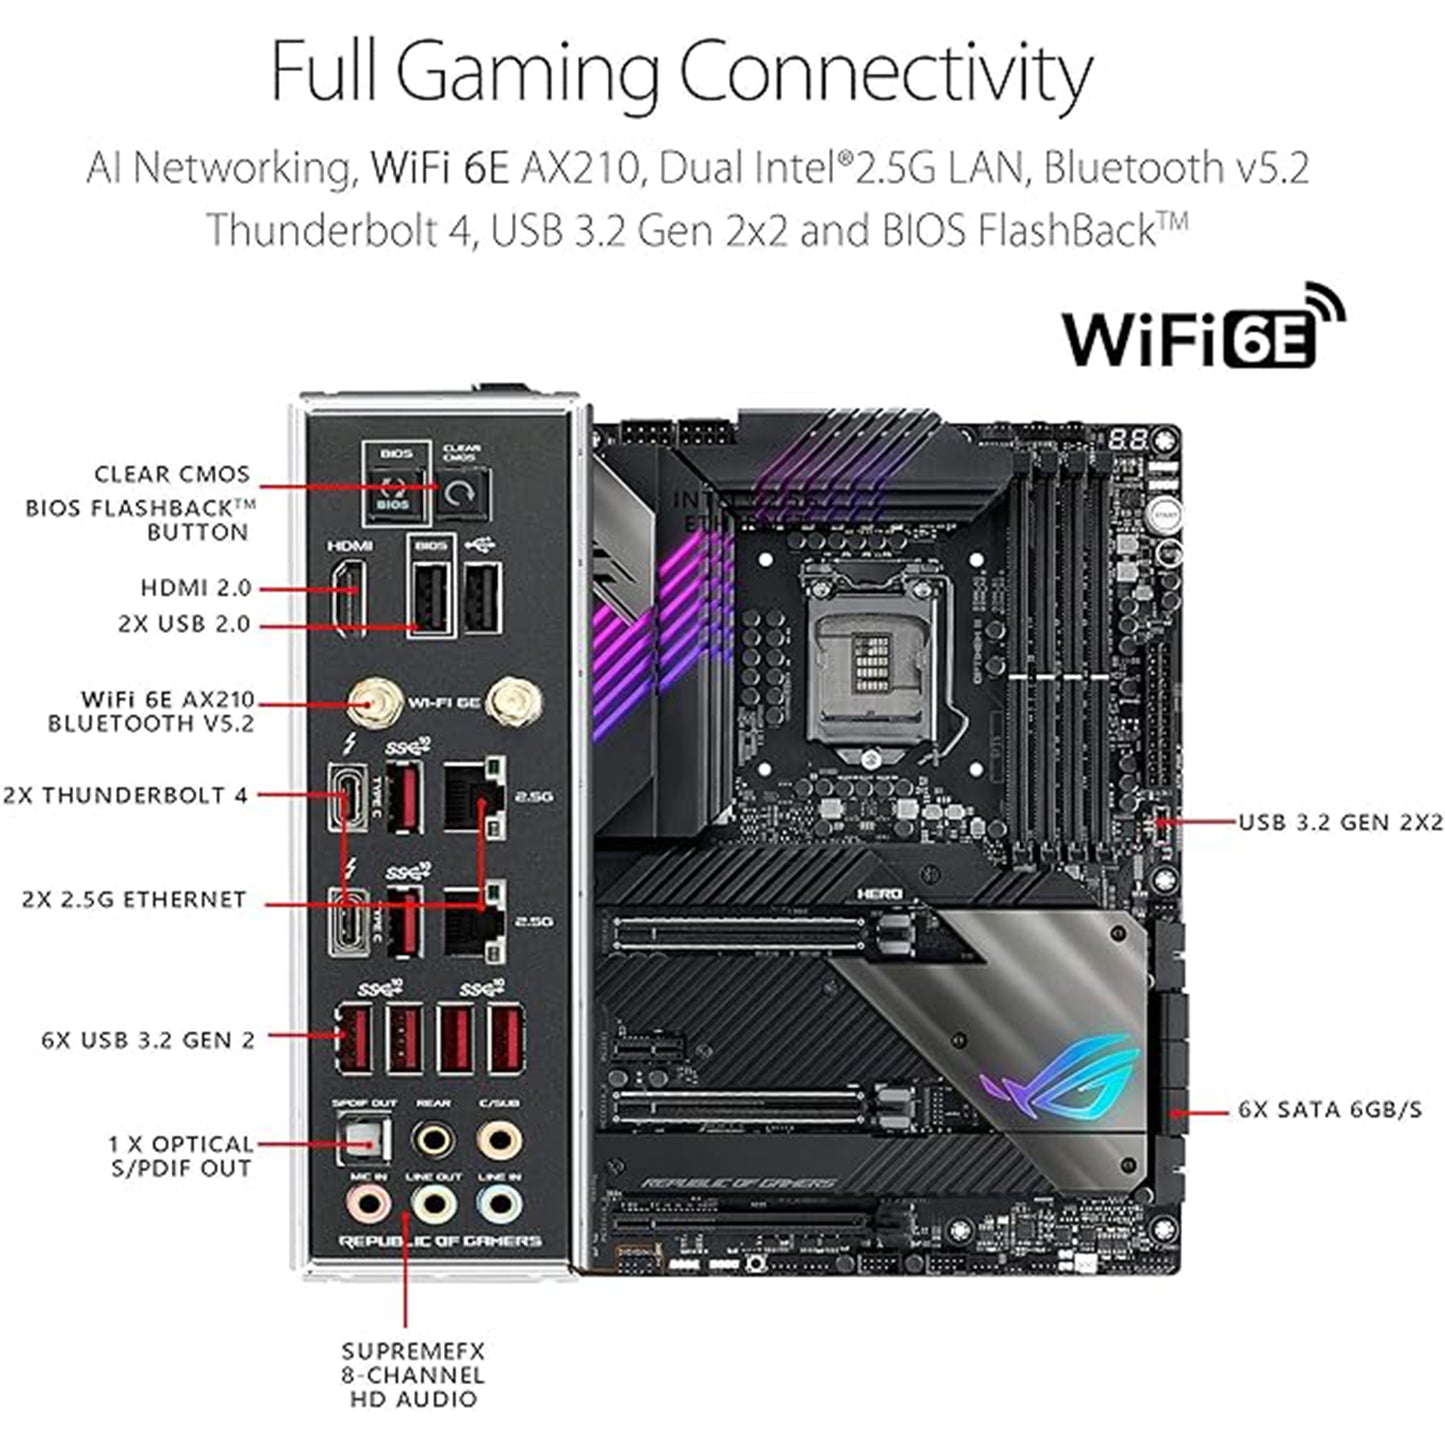 اللوحة الأم ROG Maximus XIII Hero (WiFi 6E) Z590 LGA 1200(Intel®11th/10th Gen) ATX Gaming (PCIe 4.0، 14+2 مراحل طاقة، DDR4 5333+، شبكة LAN مزدوجة 2.5 جيجا بايت، Thunderbolt 4 على اللوحة، 4X M.2/ NVMe SSD، أورا RGB) 